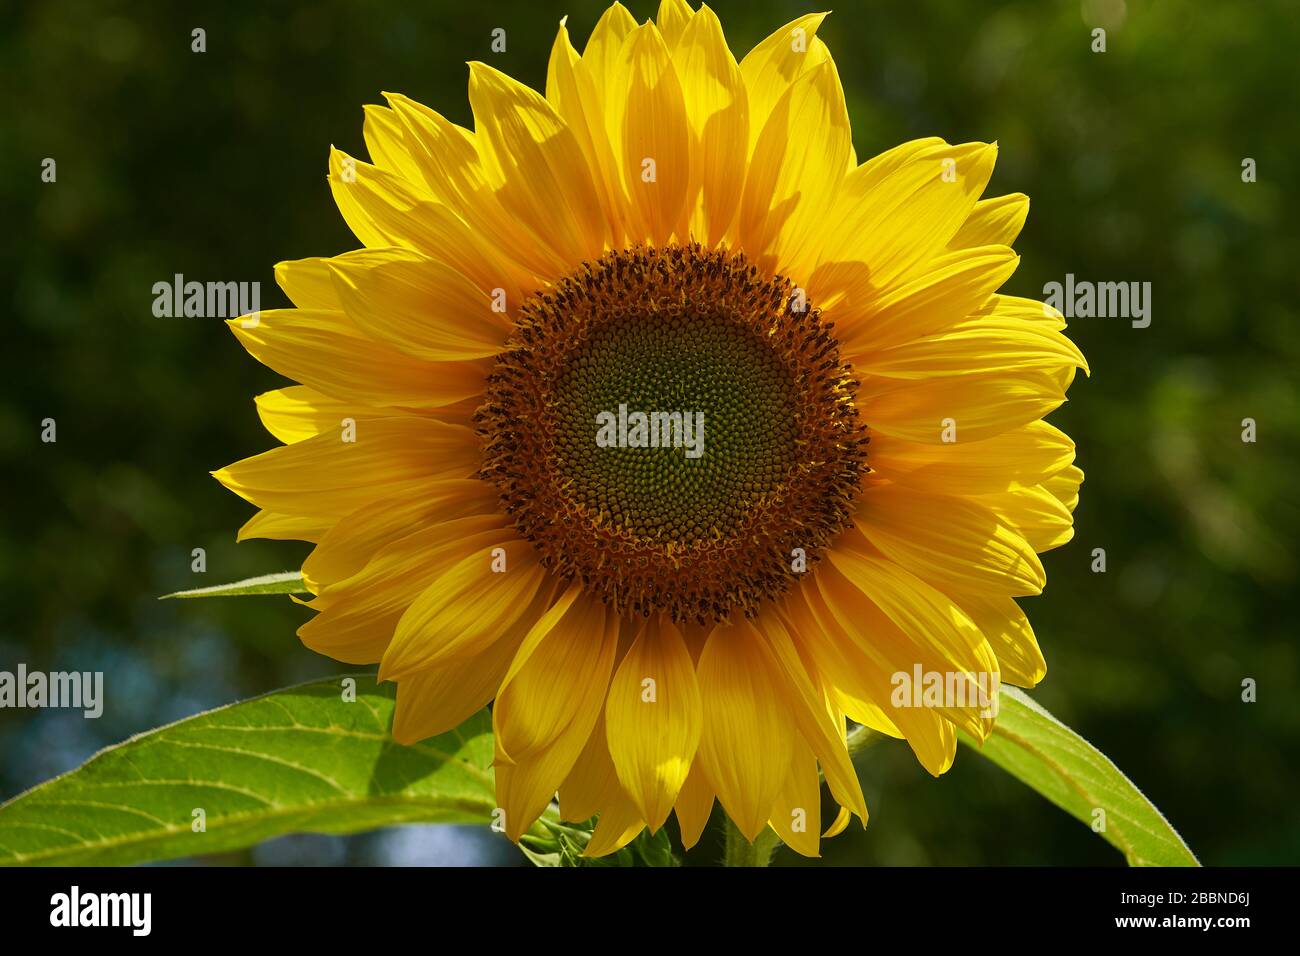 Yellow Sunflower close up fibonacci spiral in nature Stock Photo